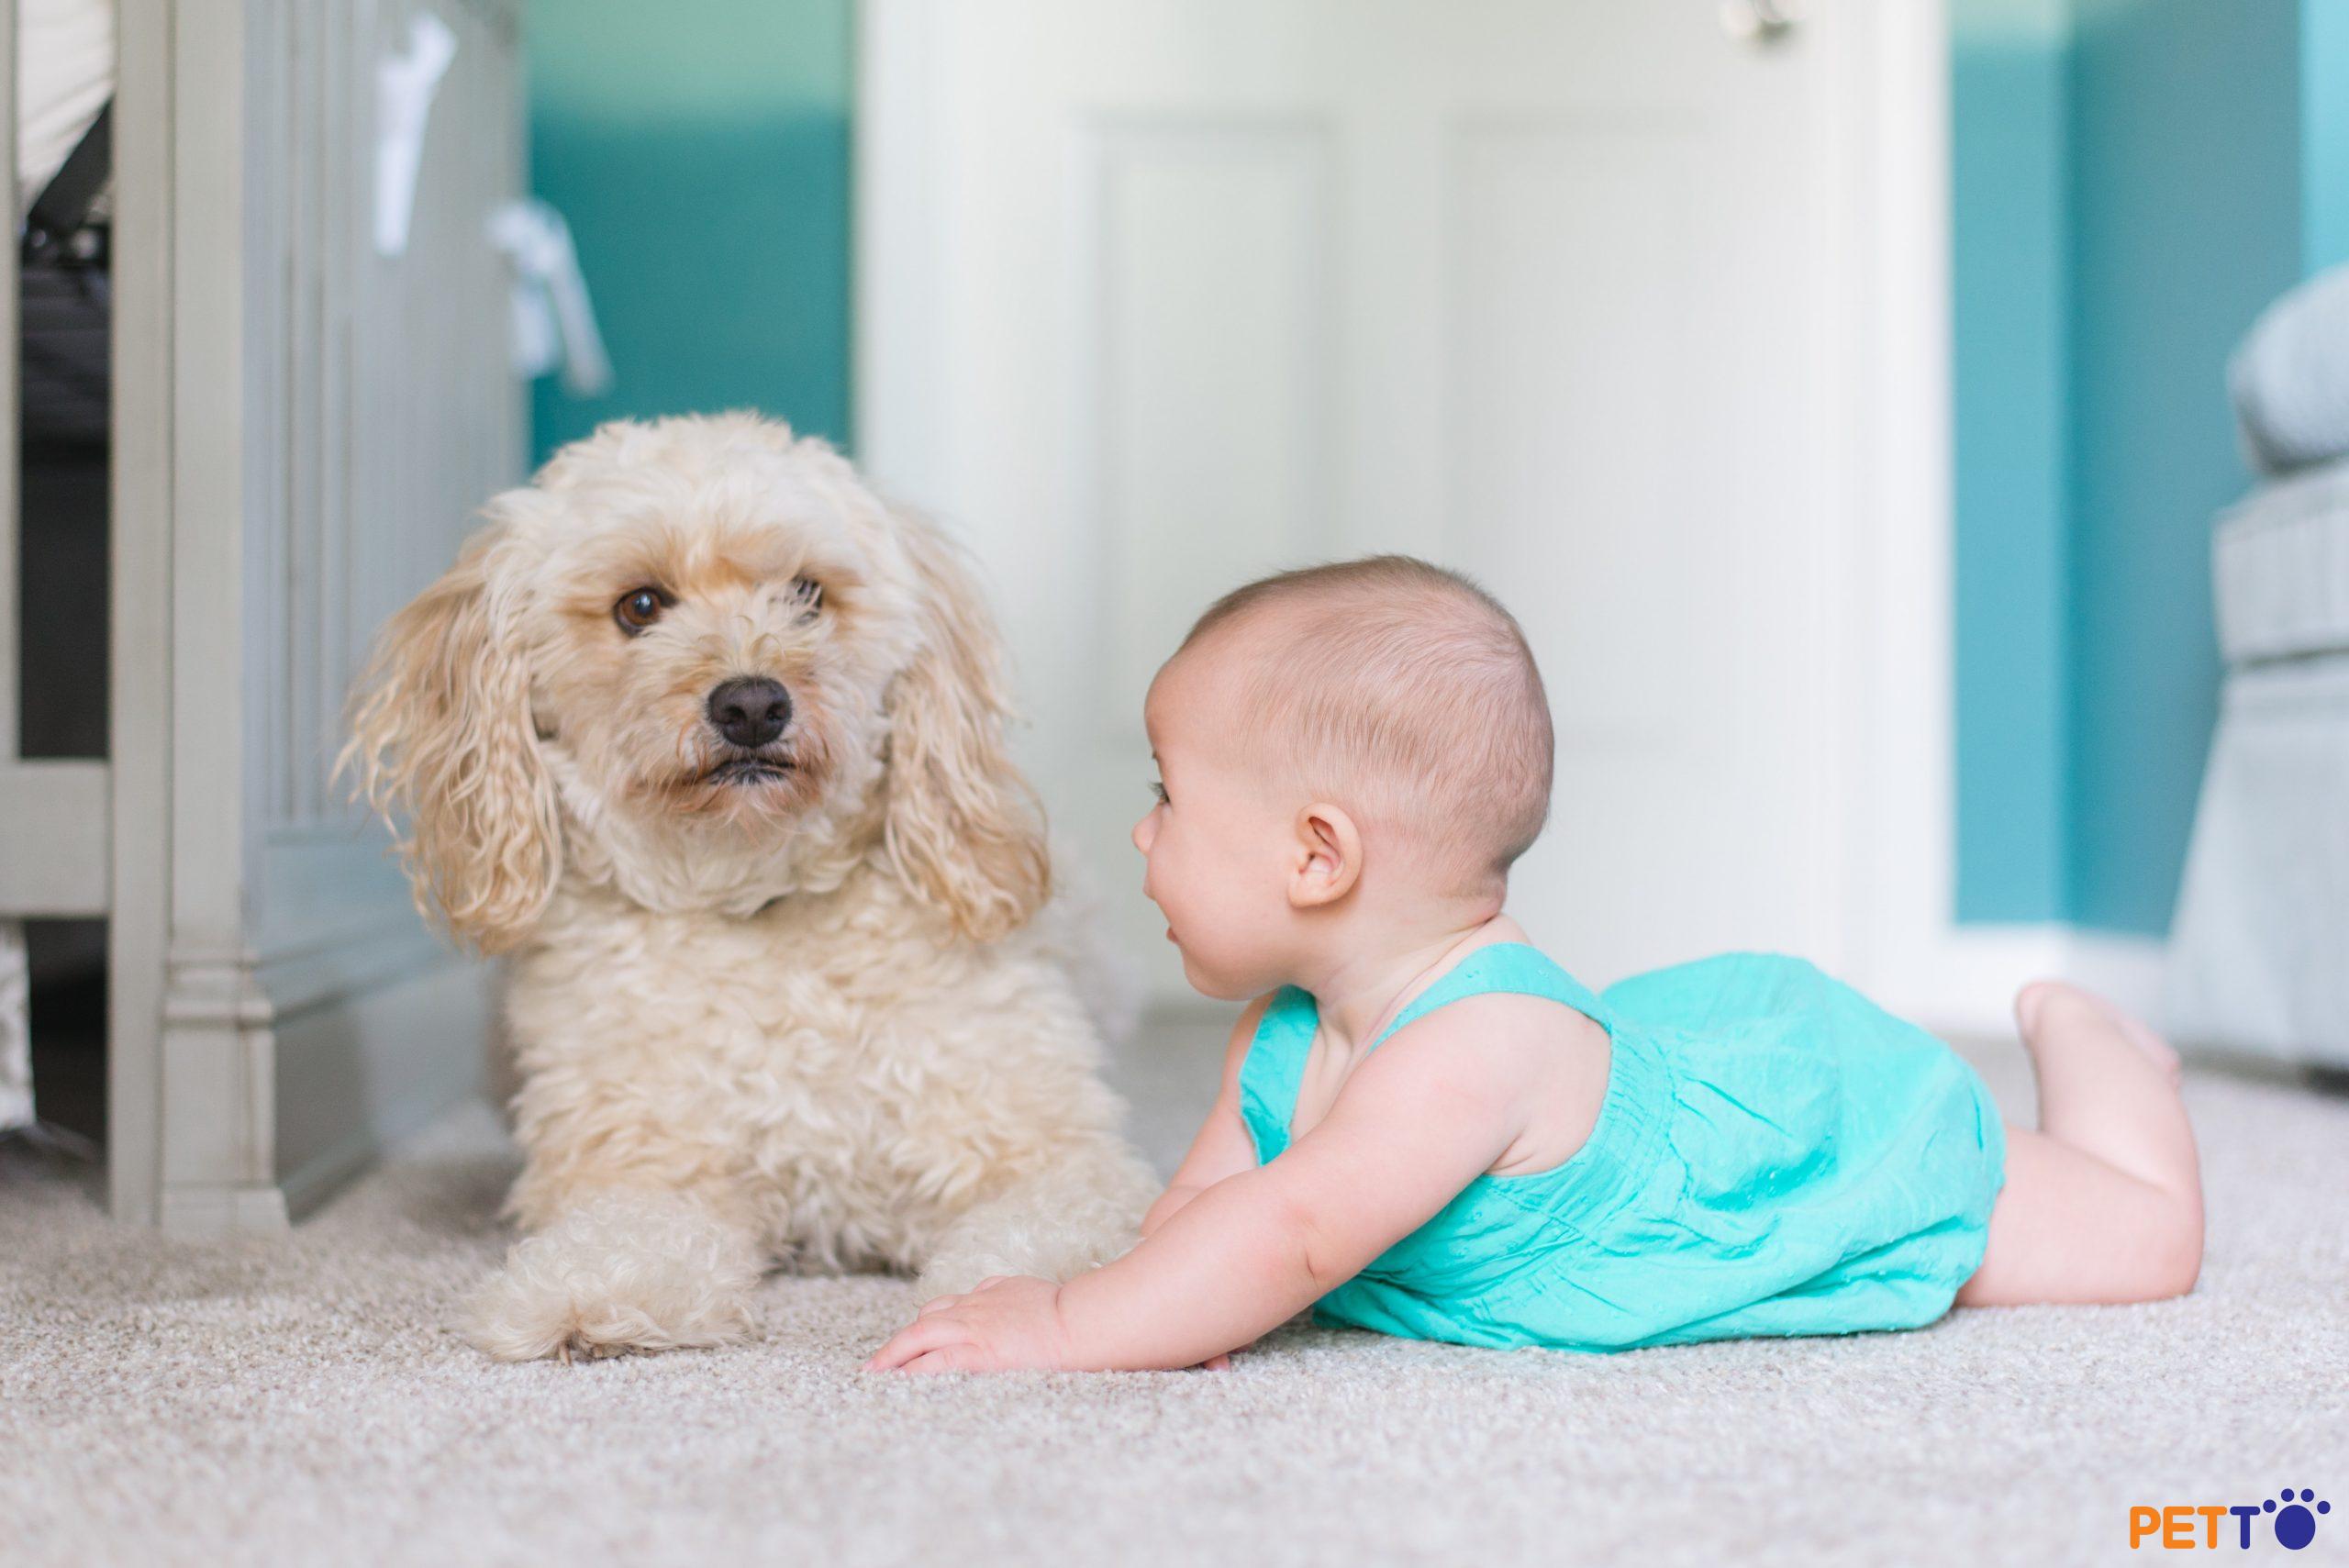 Liệu có nguy hiểm không khi em bé và chó ở chung nhà?